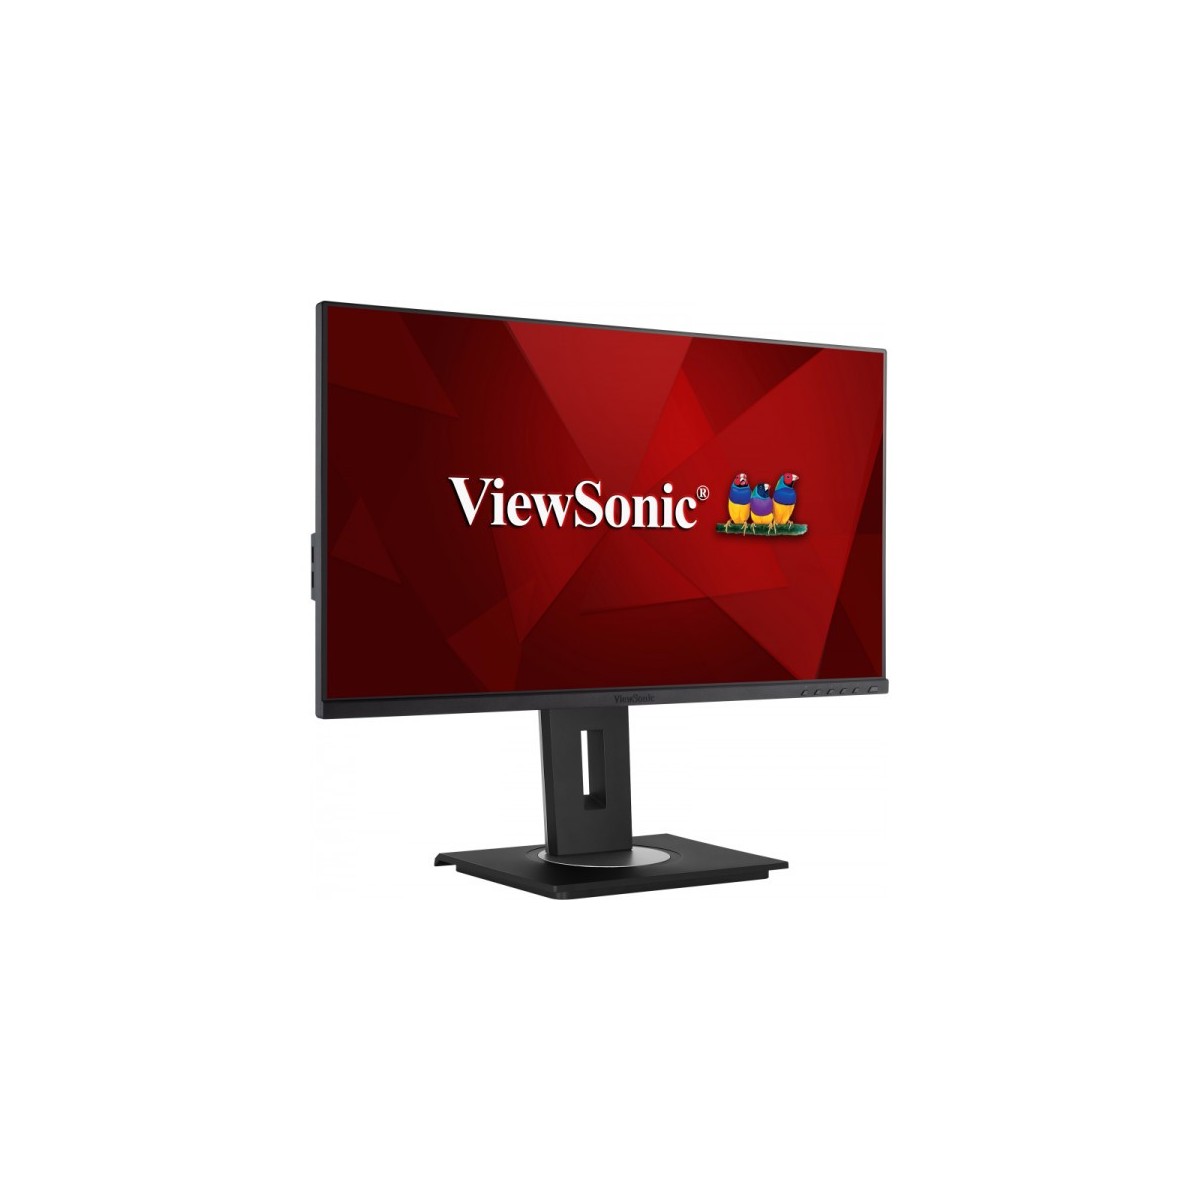 ViewSonic VG2455 - LED monitor